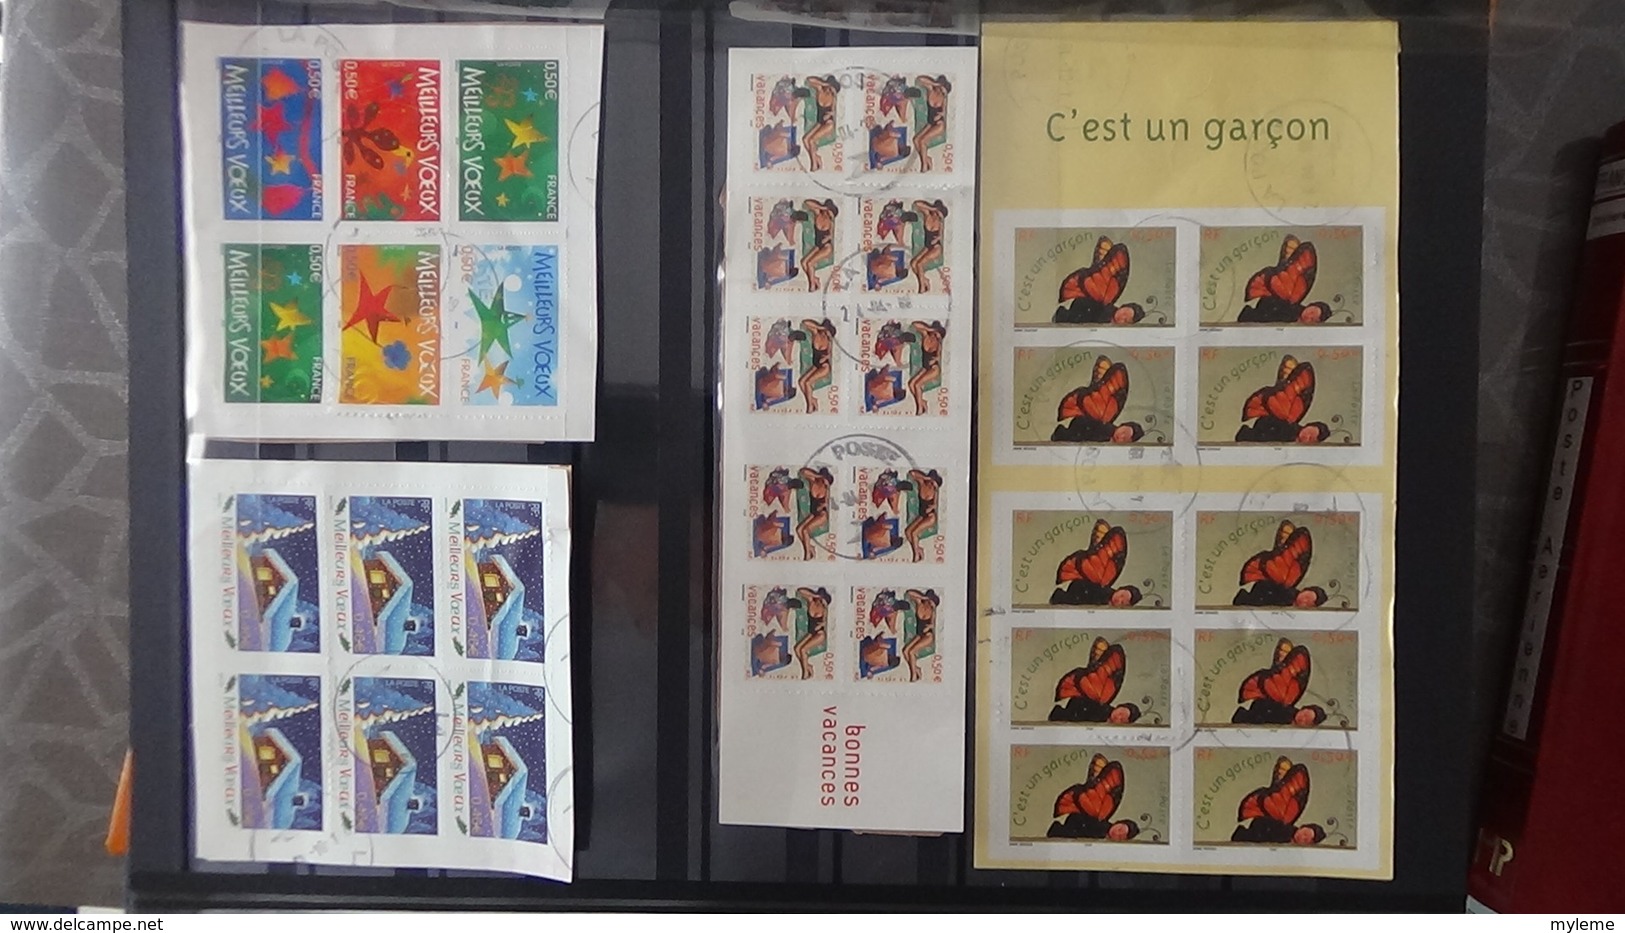 France timbres, blocs et carnets avec pour la plupart, de belles oblitérations. A saisir !!!